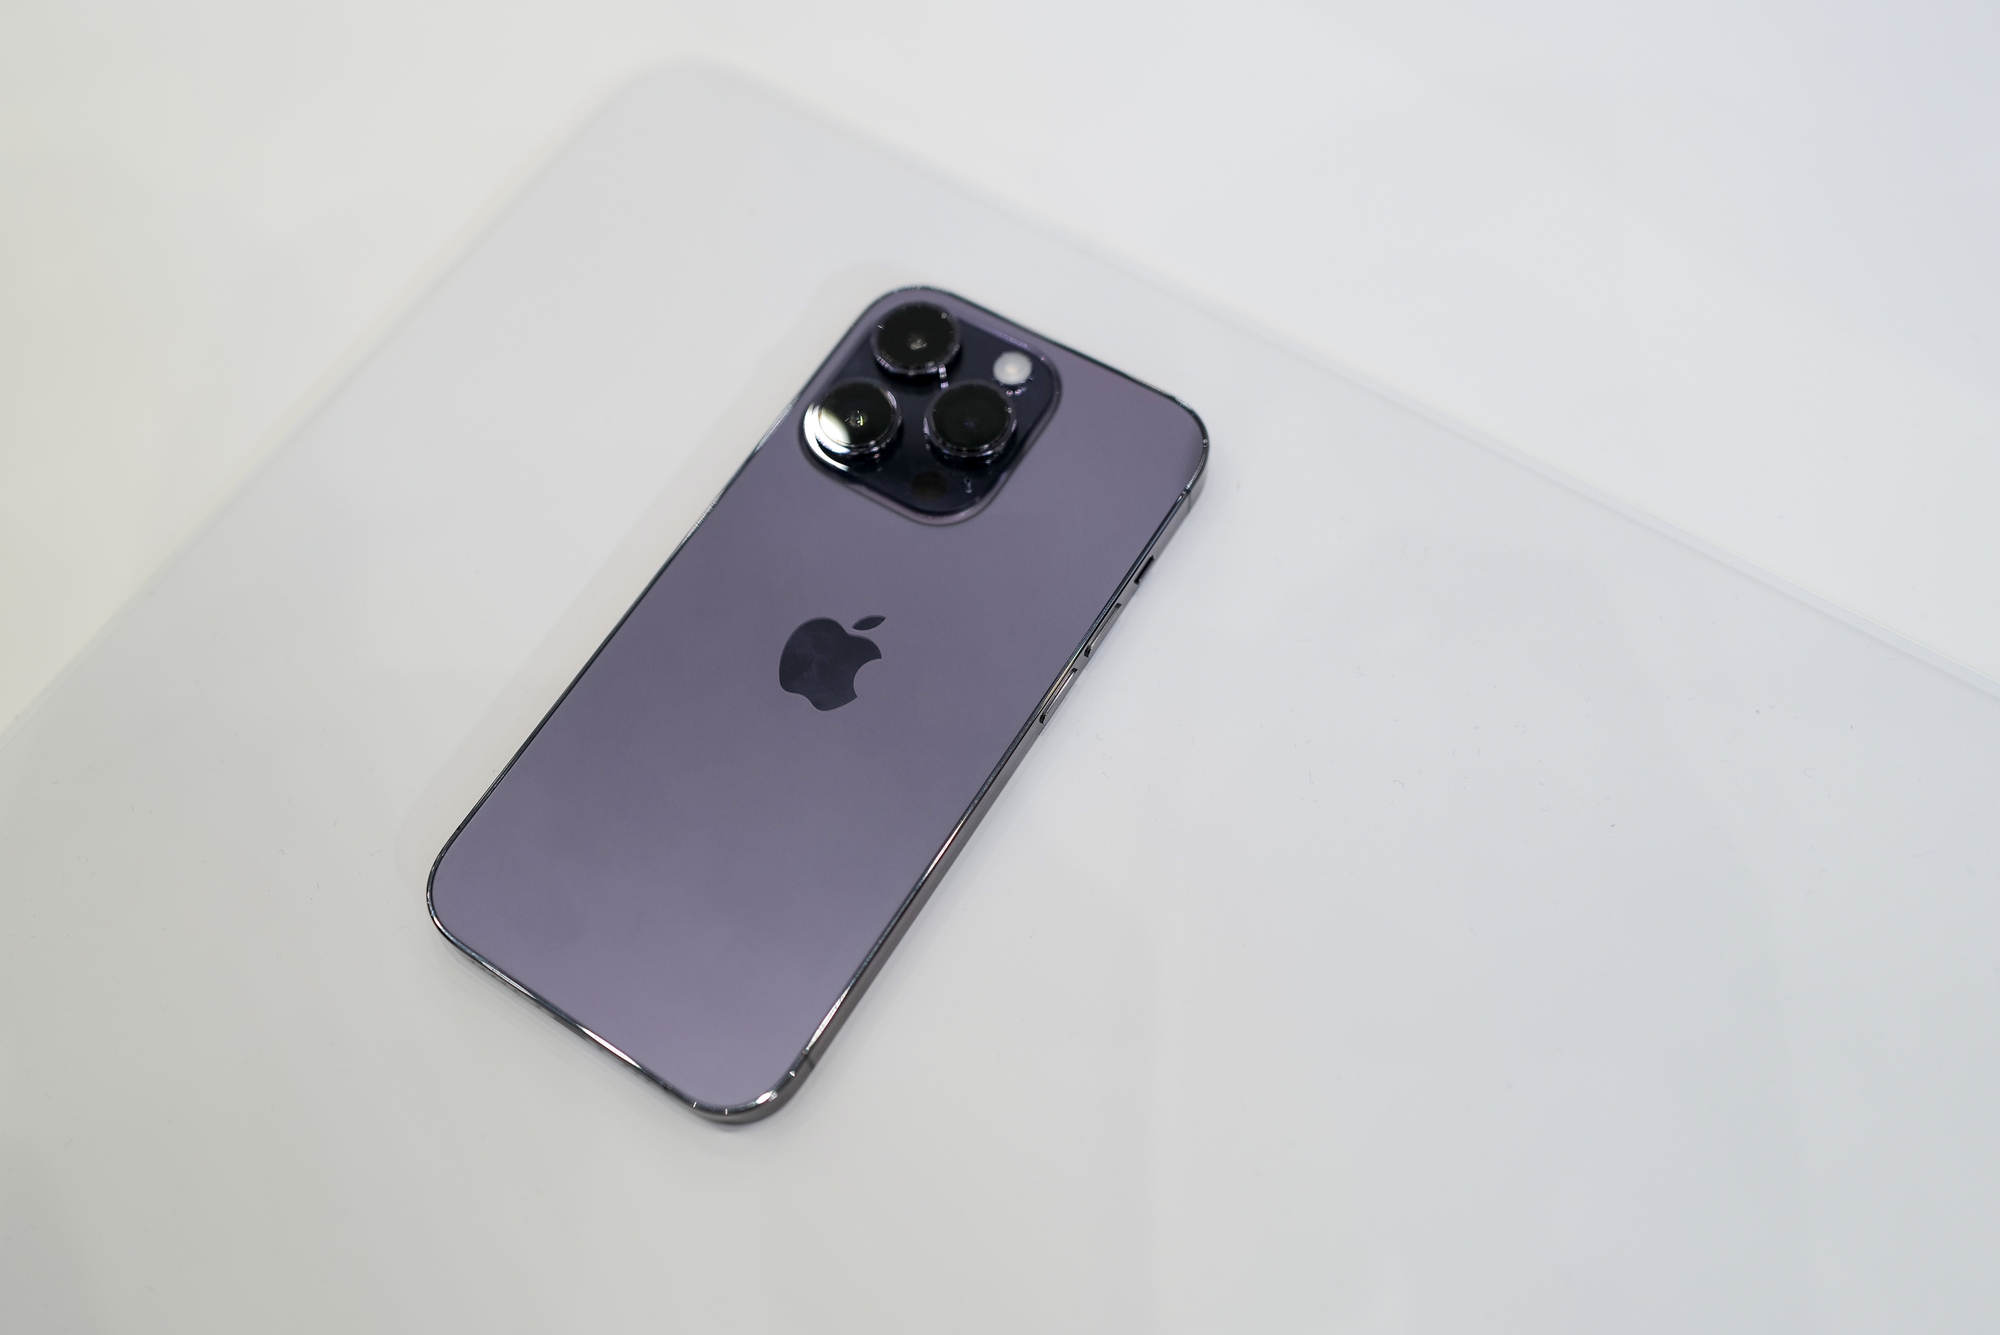 Siêu phẩm iPhone 14 Pro màu tím với thiết kế cực kỳ đẹp mắt và hiệu năng vượt trội chắc chắn sẽ khiến bạn phải say mê. Hãy cùng xem hình ảnh để khám phá thật nhiều tiện ích đặc biệt của sản phẩm này nhé!